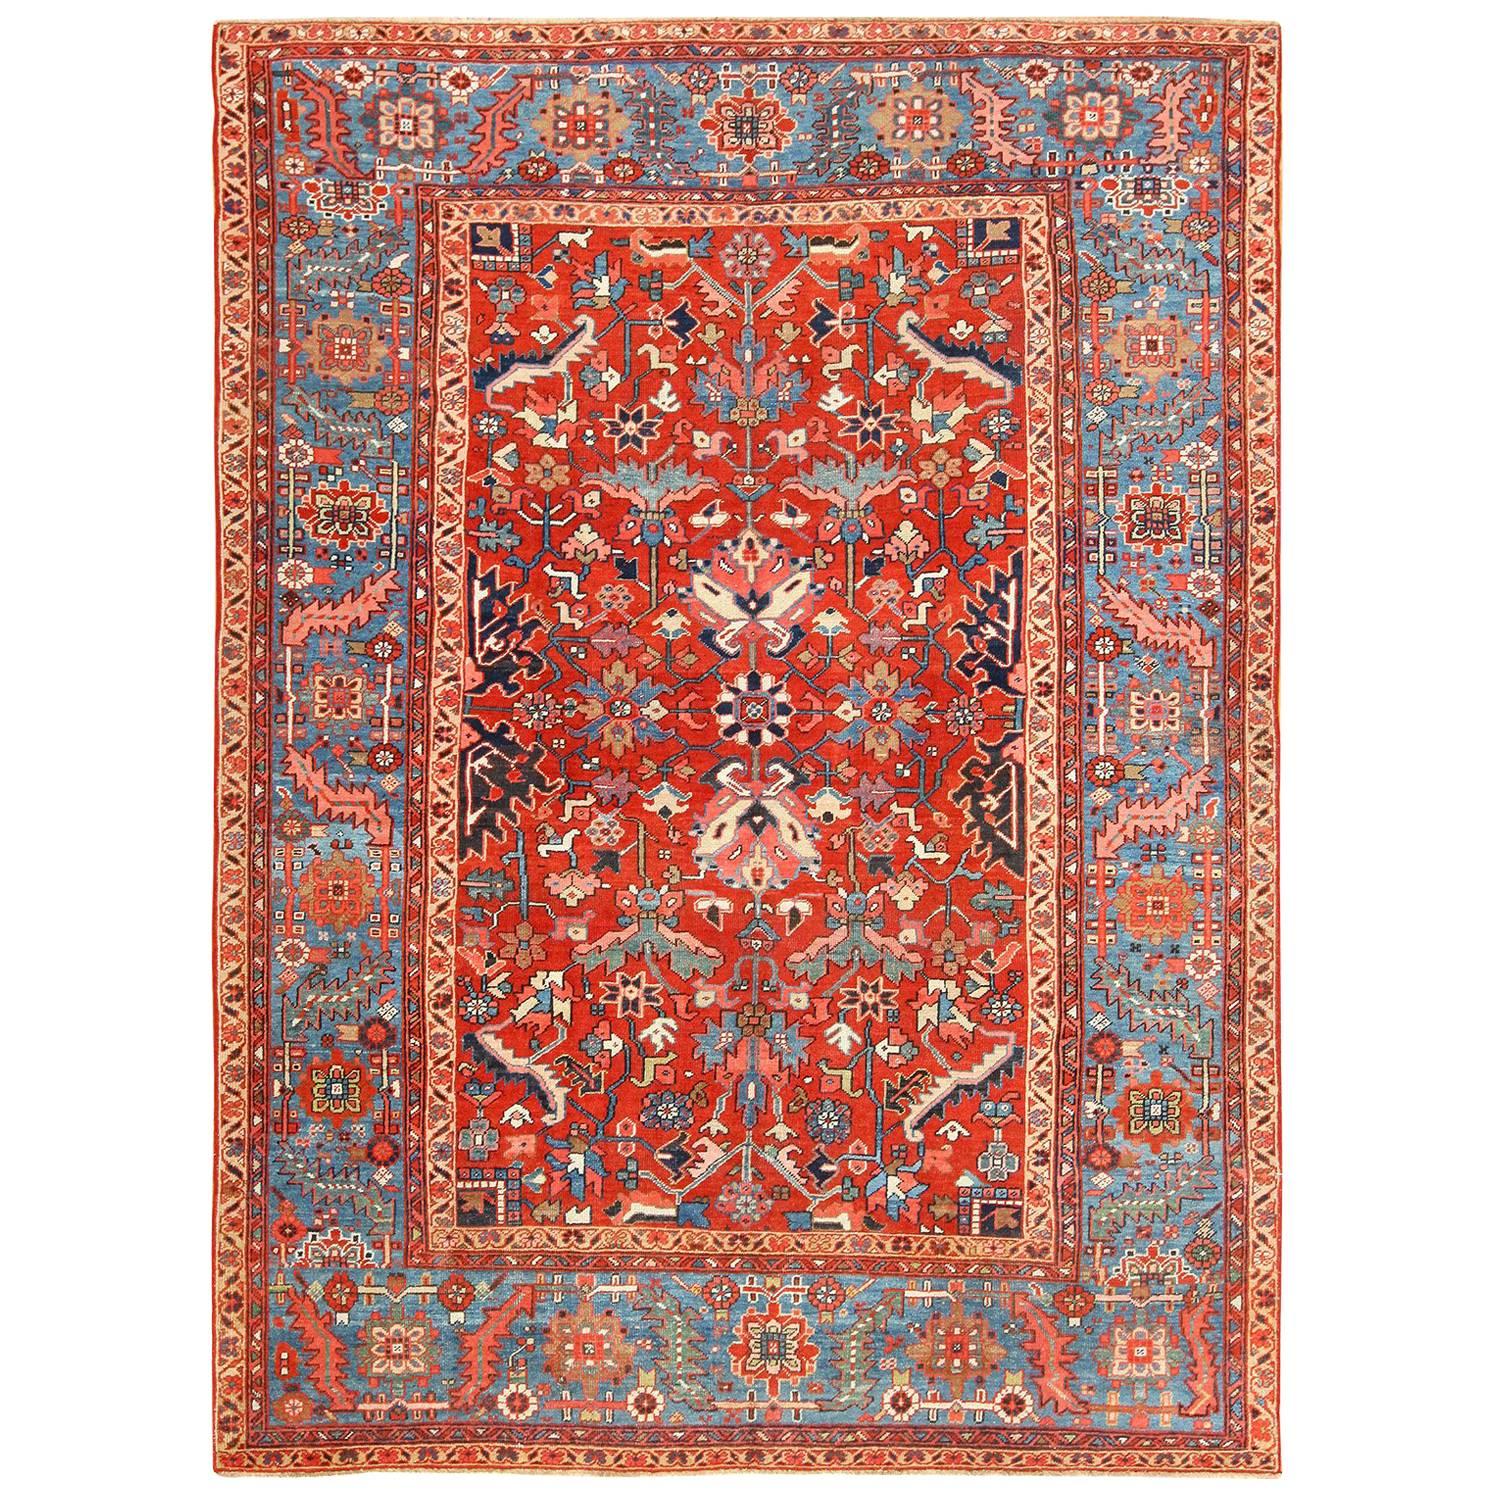 Antique Oriental Room Size Persian Heriz Rug